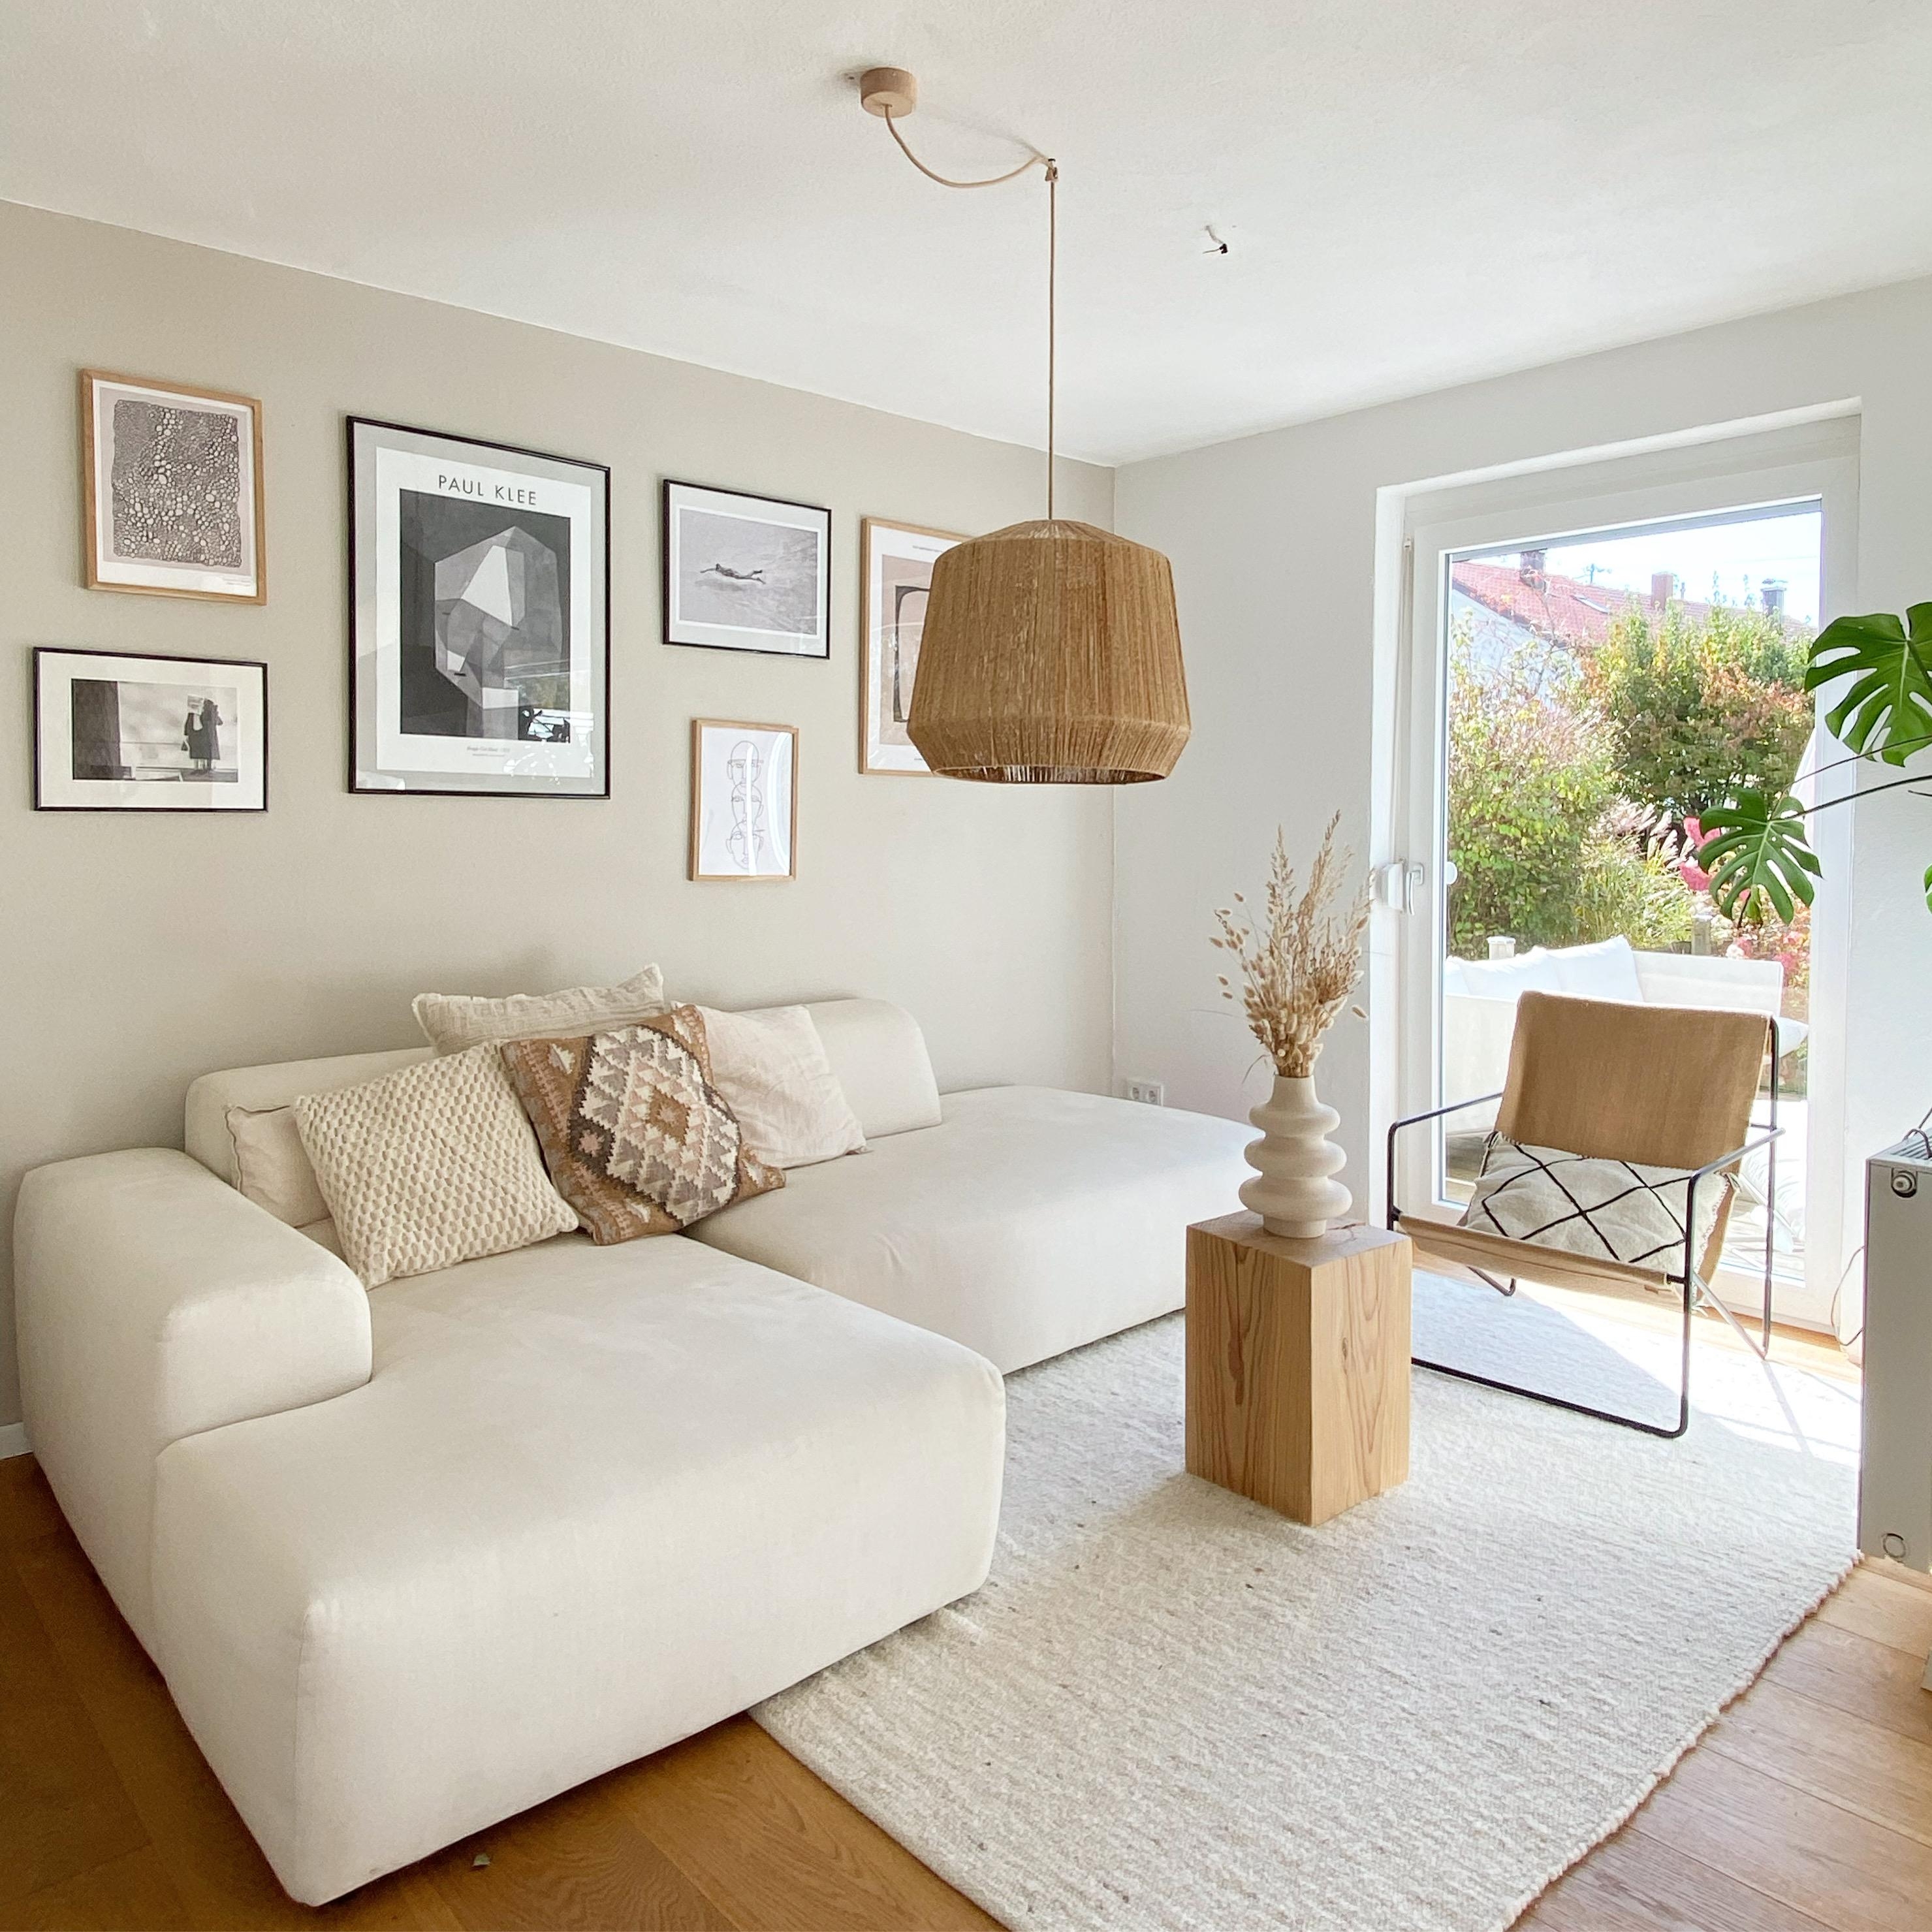 #wohnzimmer #couch #sofa #hängelampe #beistelltisch #sessel #desertchair #teppich #poster #bilder